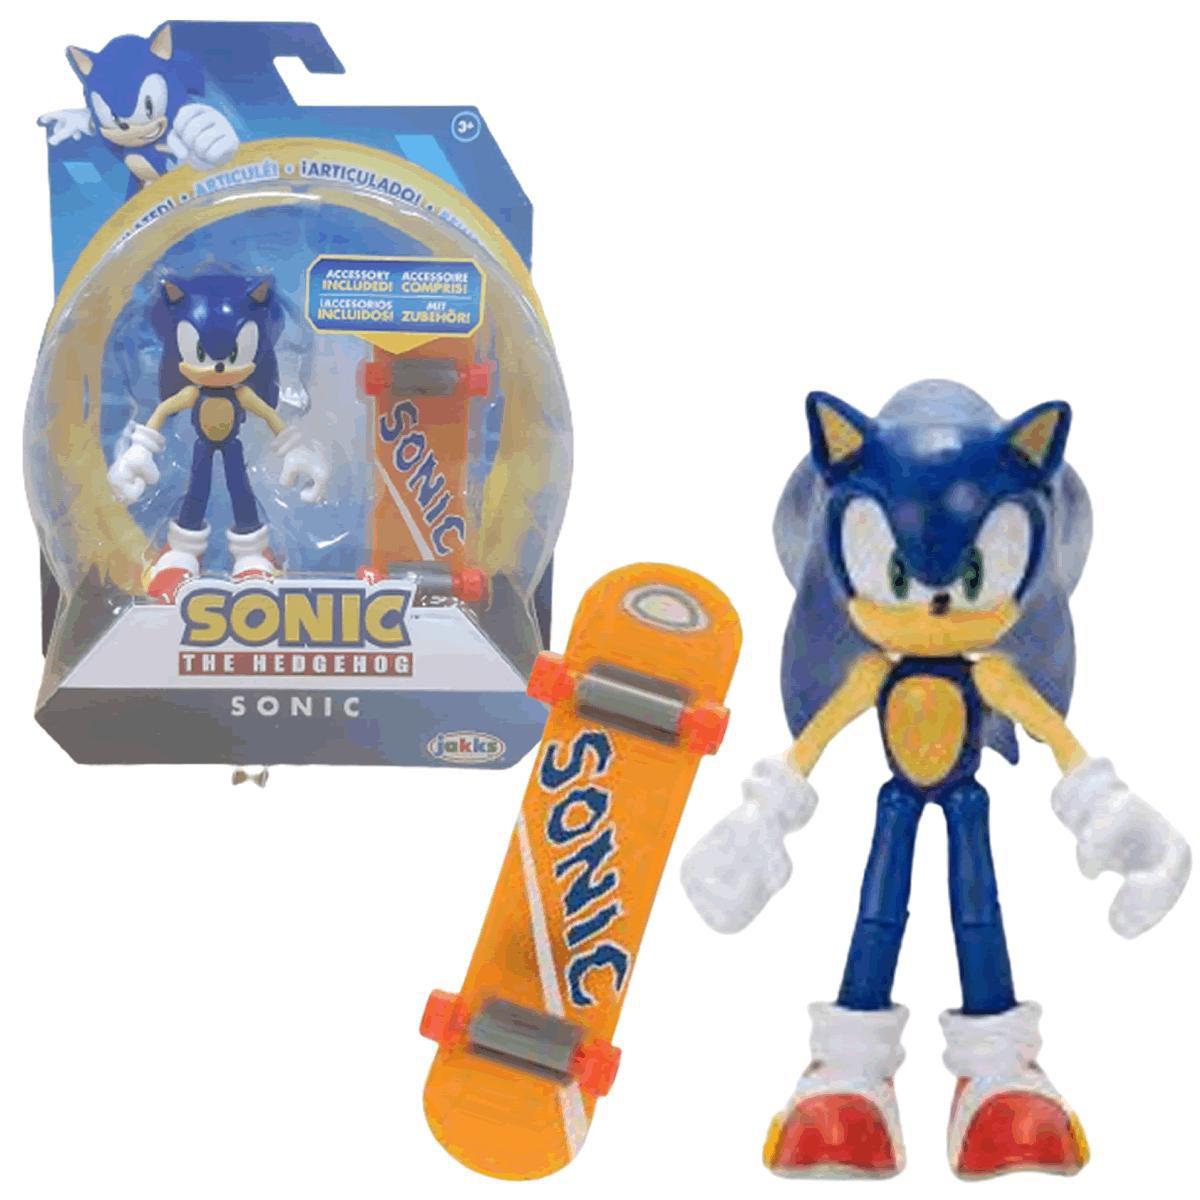 Boneco Articulado Sonic The Hedgehog - Candide em Promoção na